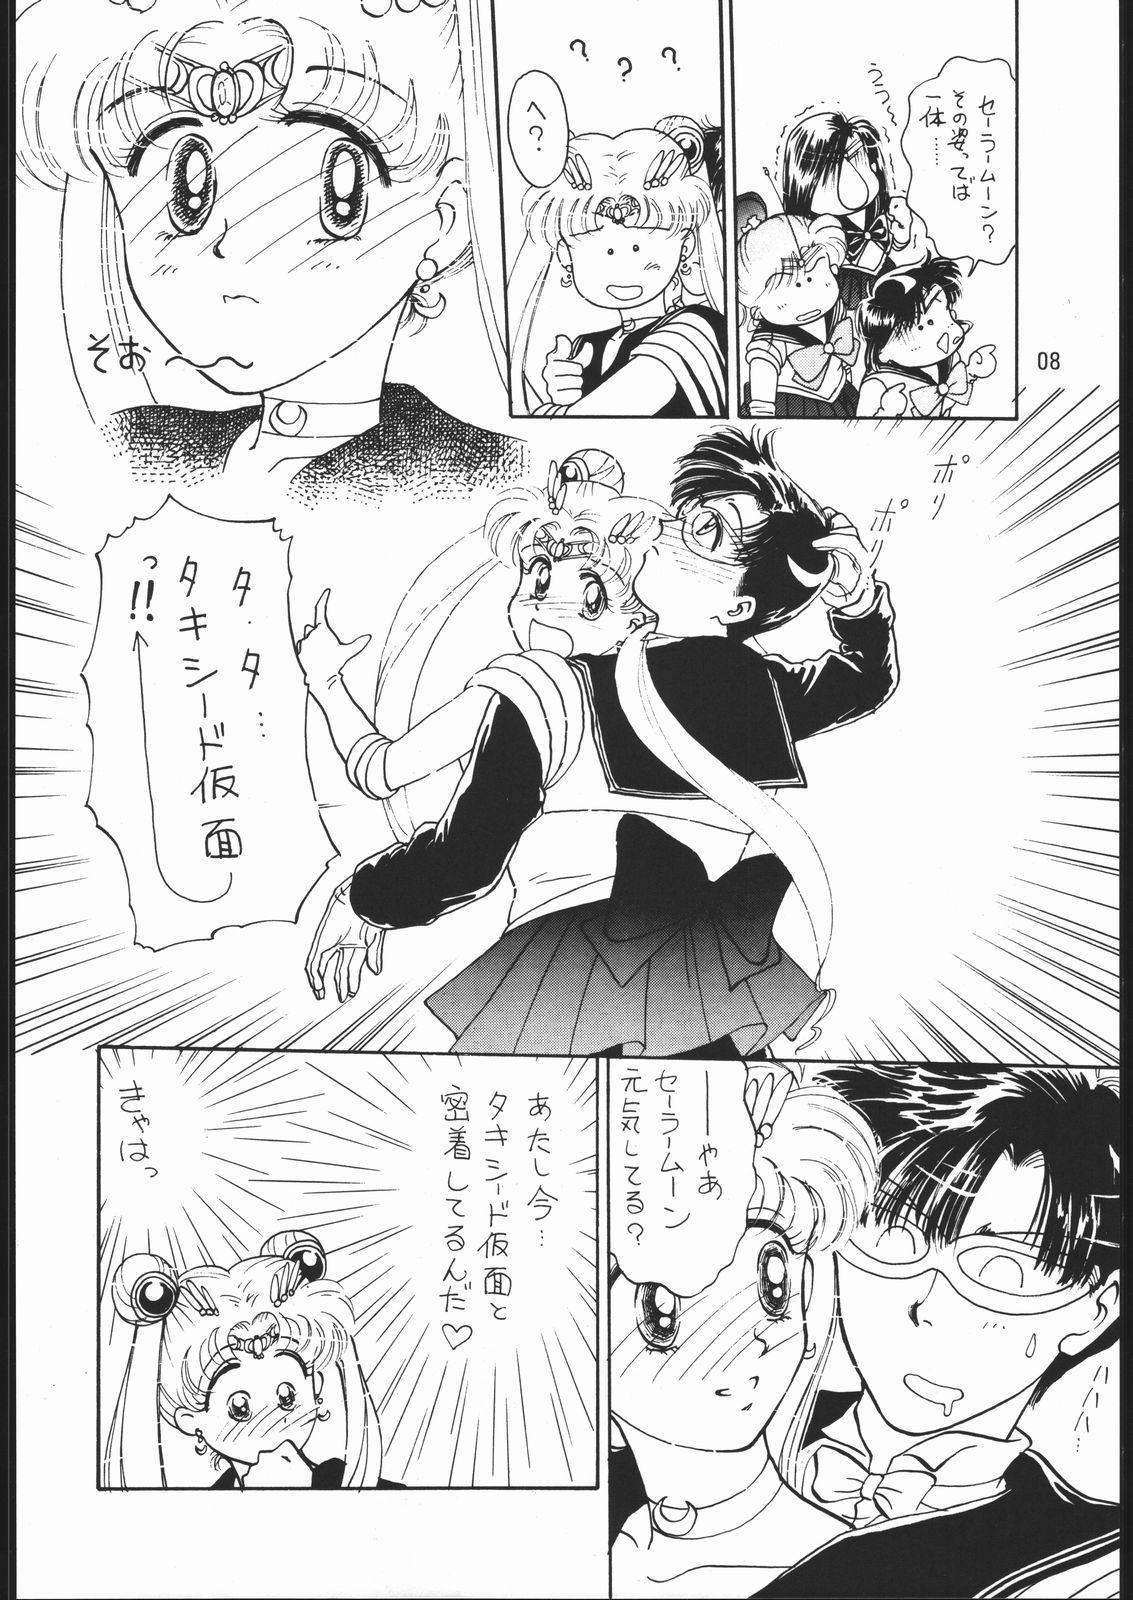 Fresh うさぎがピョン!! - Sailor moon Italiano - Page 7